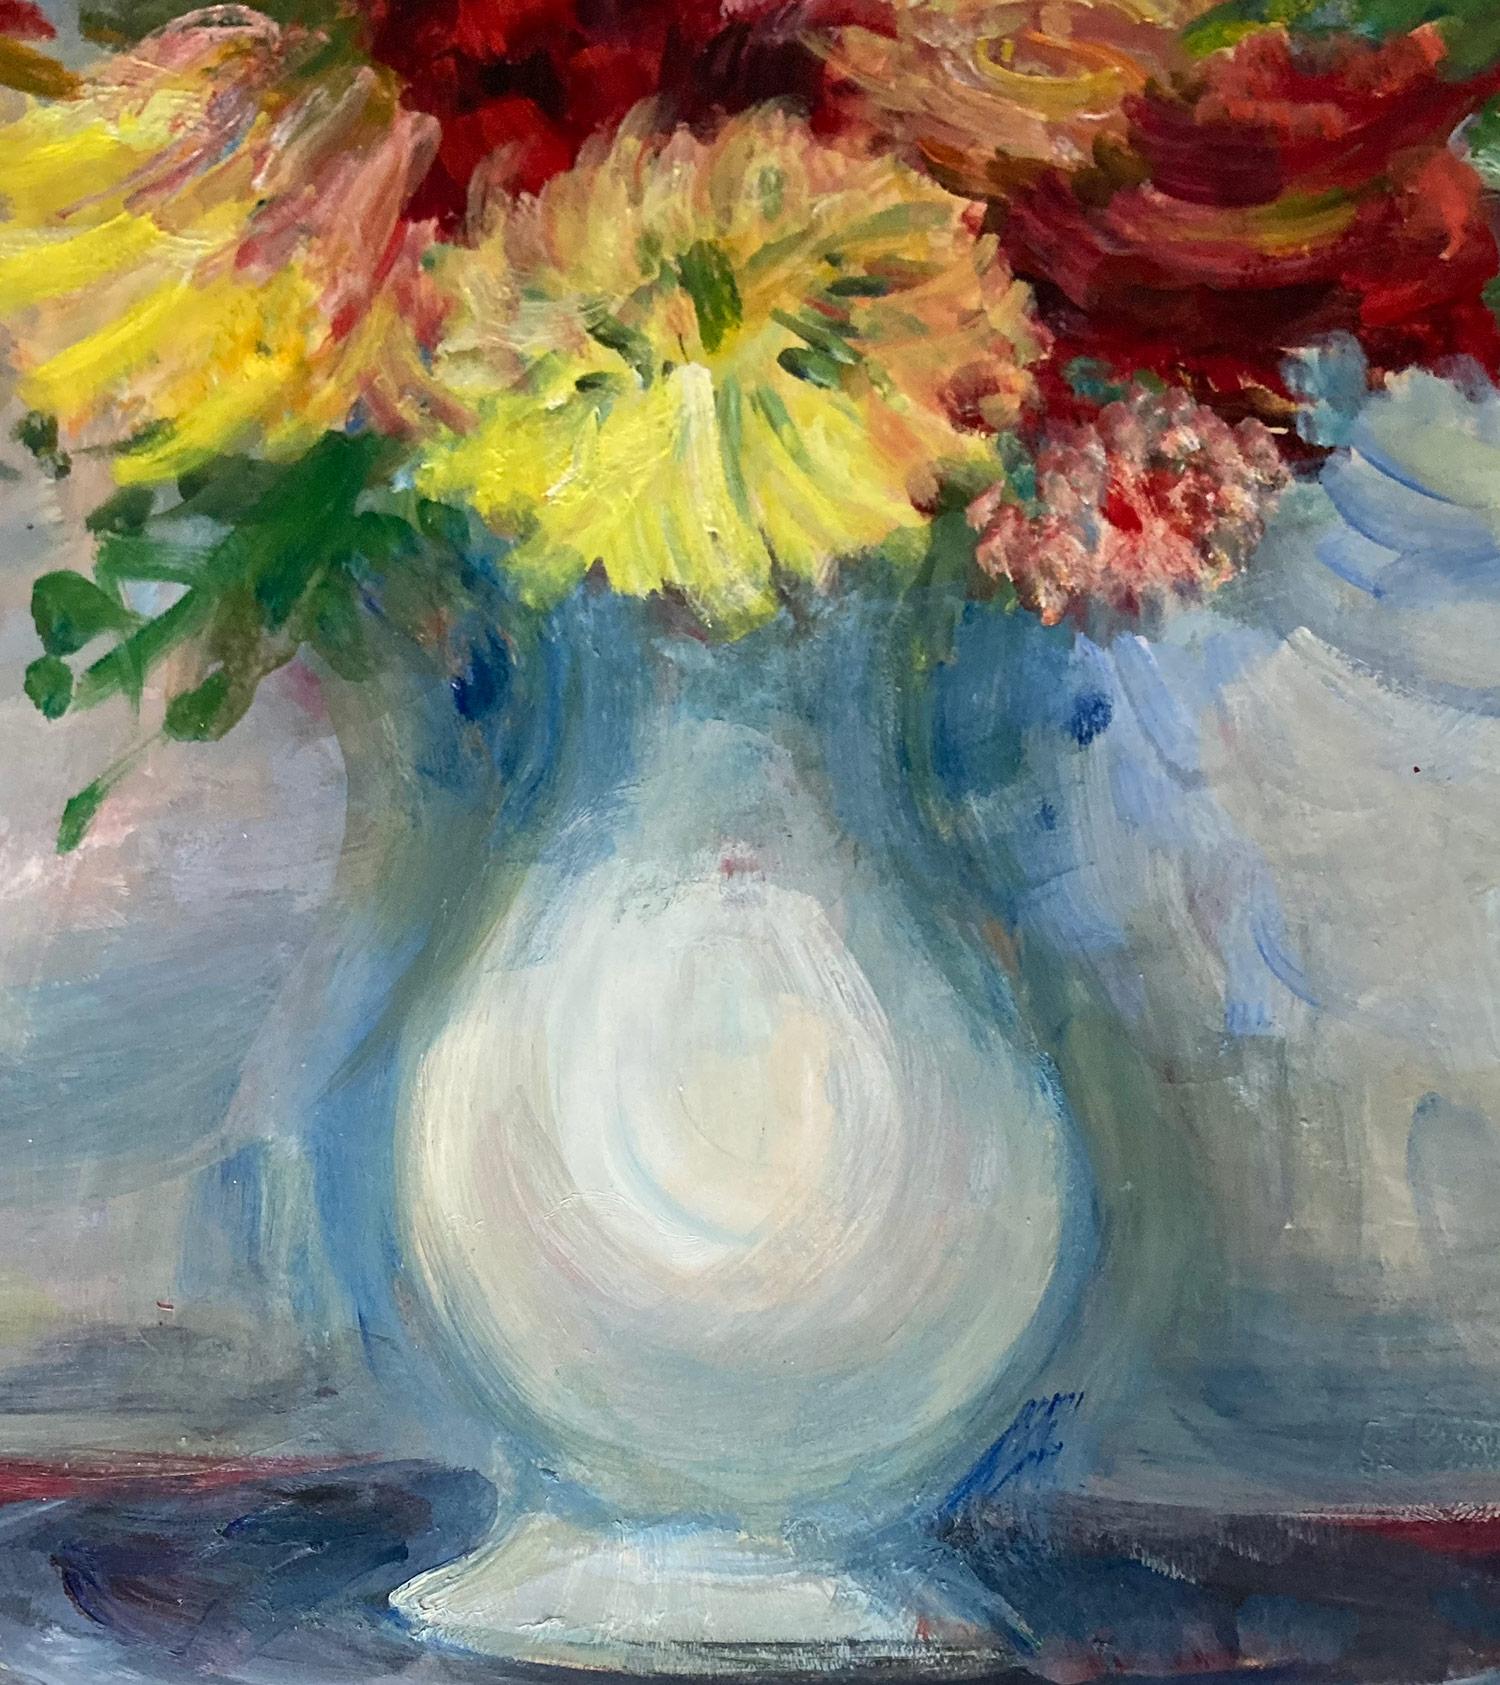 Ein charmantes Ölgemälde auf Papier, das ein buntes Blumenstillleben in einer weißen Vase auf einem Holztisch zeigt. Die abgebildeten Blumen sind ein bunter Strauß aus Nelken, Gänseblümchen, Grünzeug und roten Rosen.  Die leuchtenden Farben und die